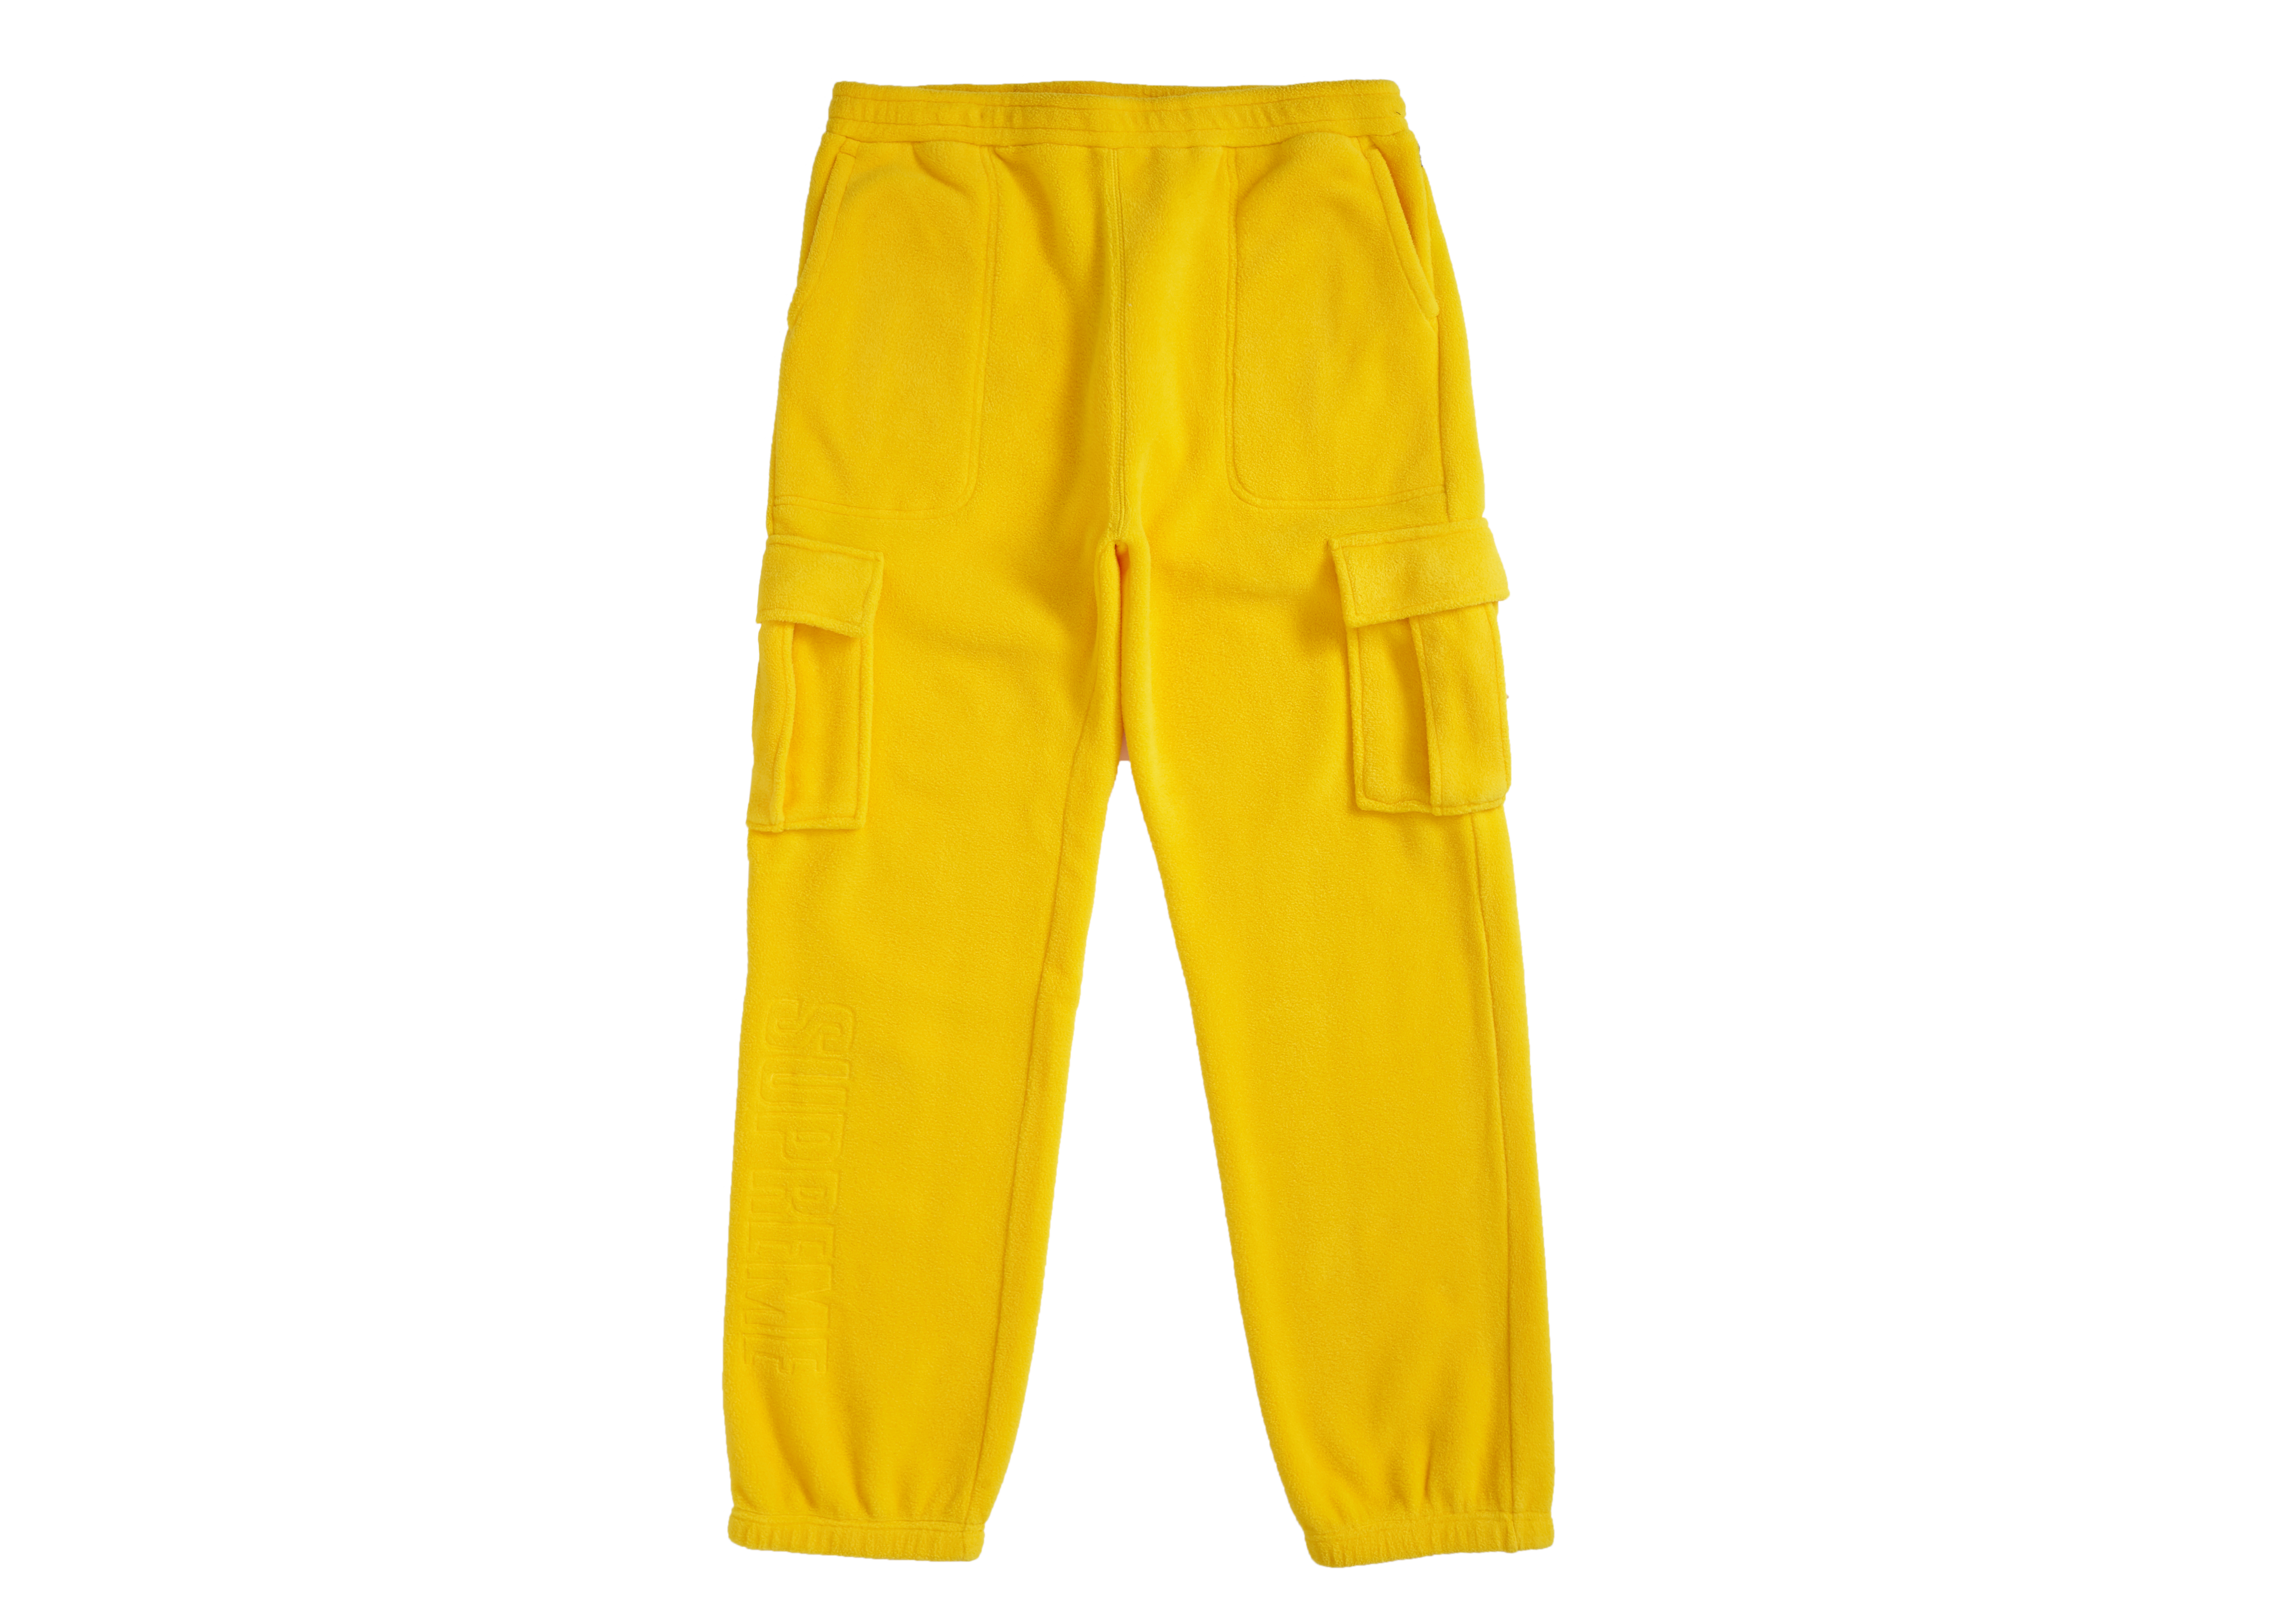 Supreme Polartec Cargo Pant Yellow Men's - FW18 - US